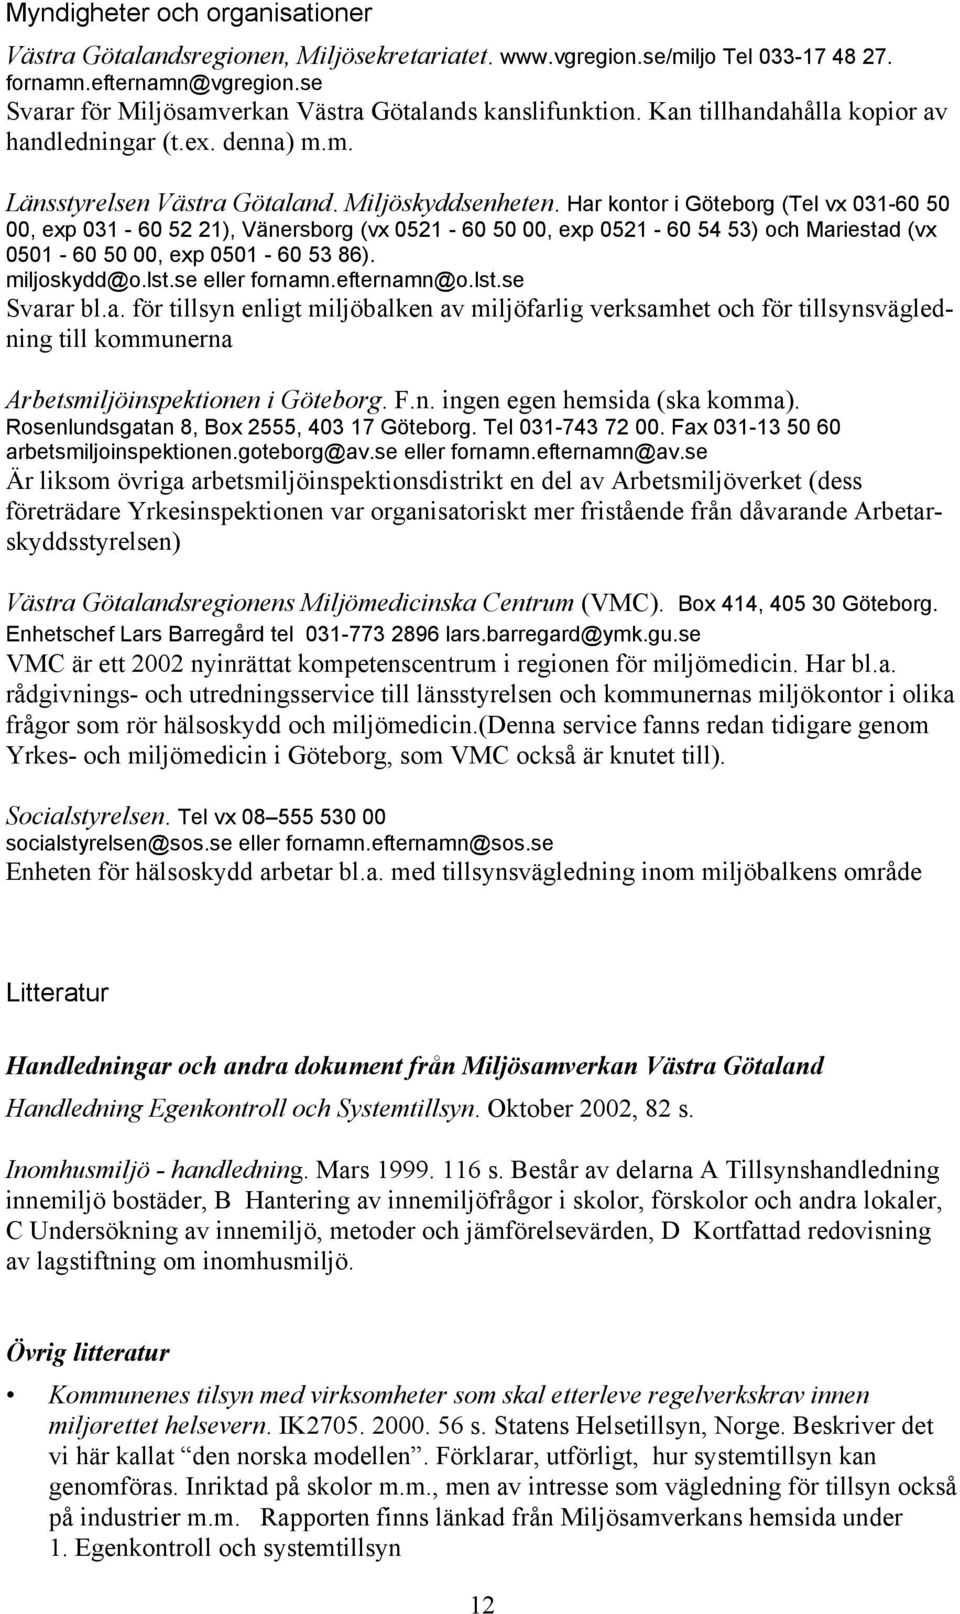 Har kontor i Göteborg (Tel vx 031-60 50 00, exp 031-60 52 21), Vänersborg (vx 0521-60 50 00, exp 0521-60 54 53) och Mariestad (vx 0501-60 50 00, exp 0501-60 53 86). miljoskydd@o.lst.se eller fornamn.